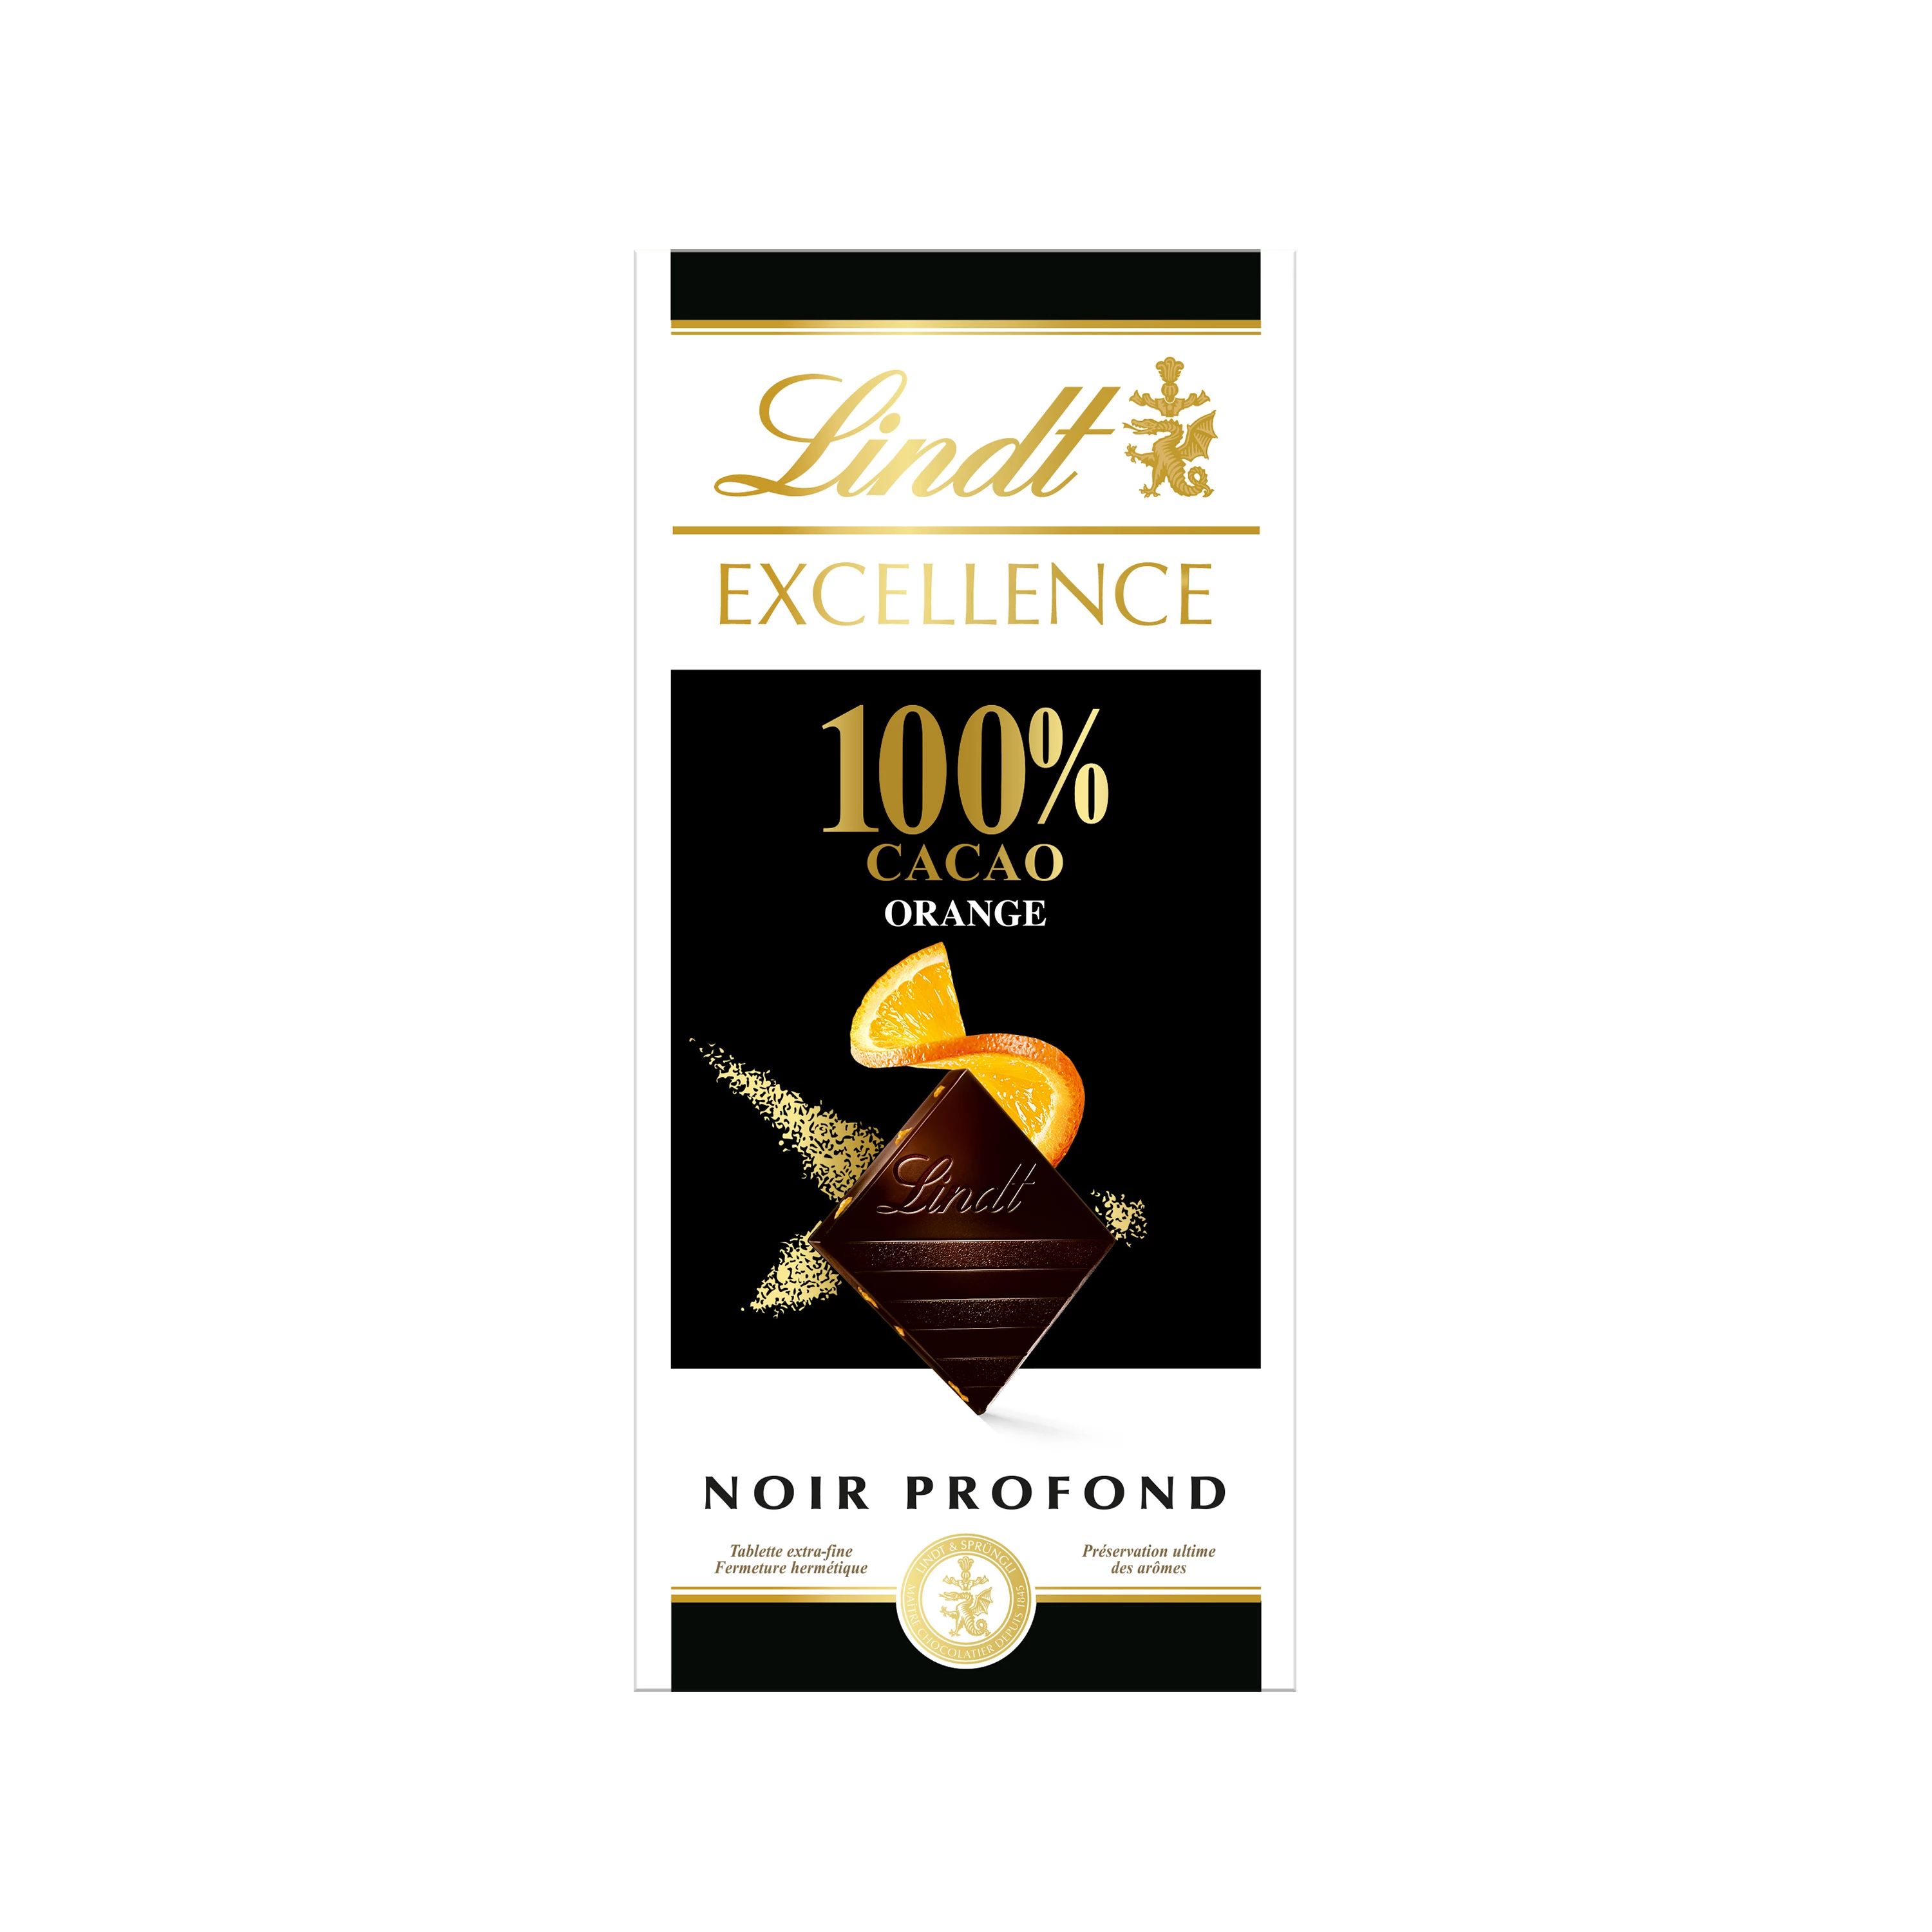 Viên nén màu cam cacao 100% Excellence Black 50 G - LINDT